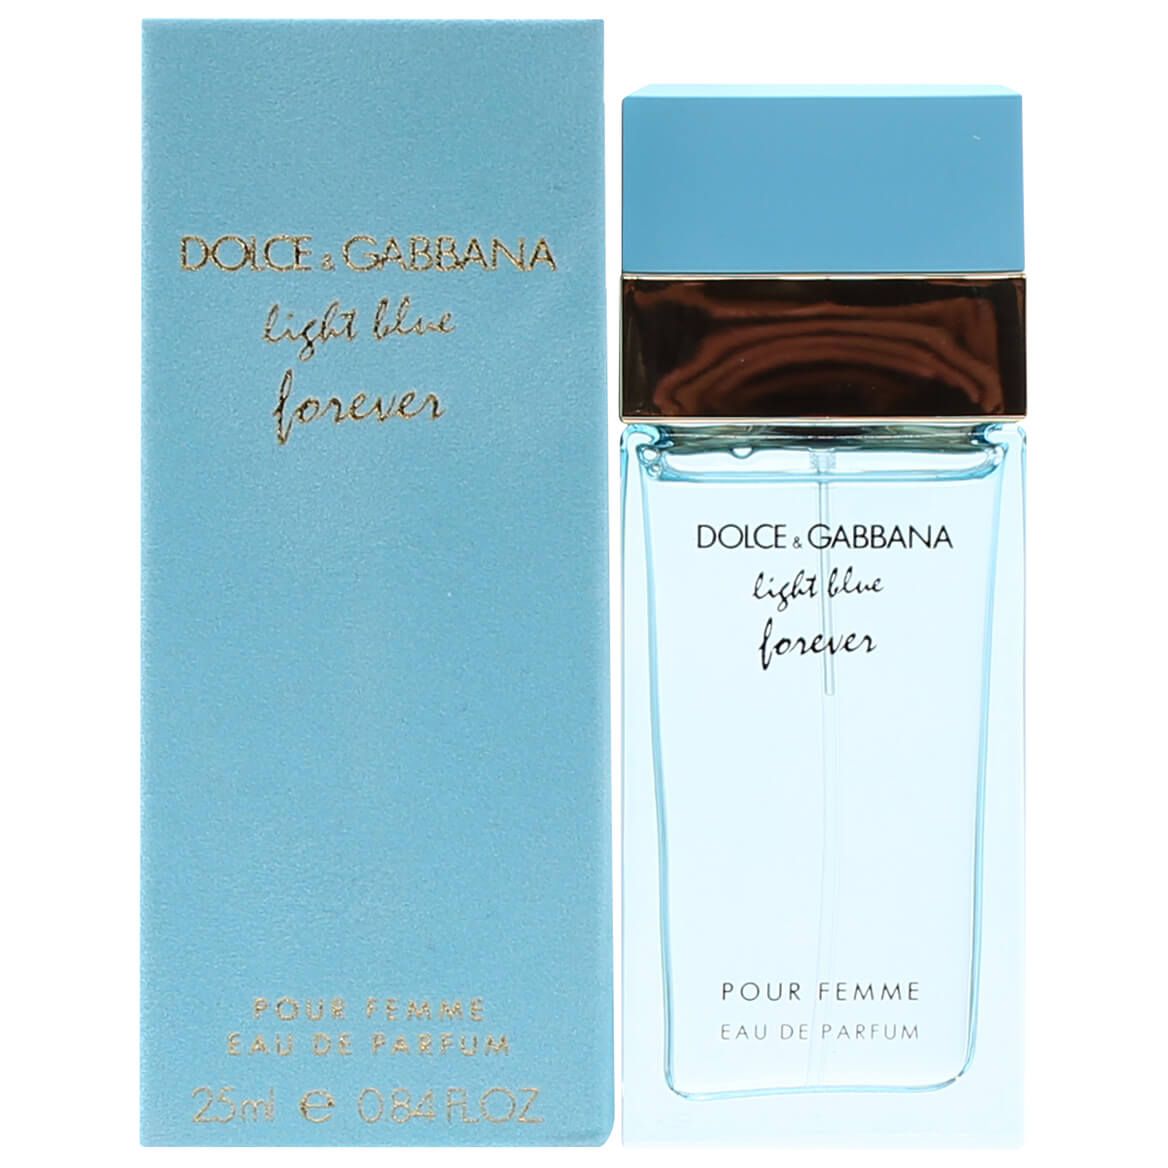 Dolce & Gabbana Light Blue Forever for Women EDP, 0.8 fl. oz. + '-' + 377247